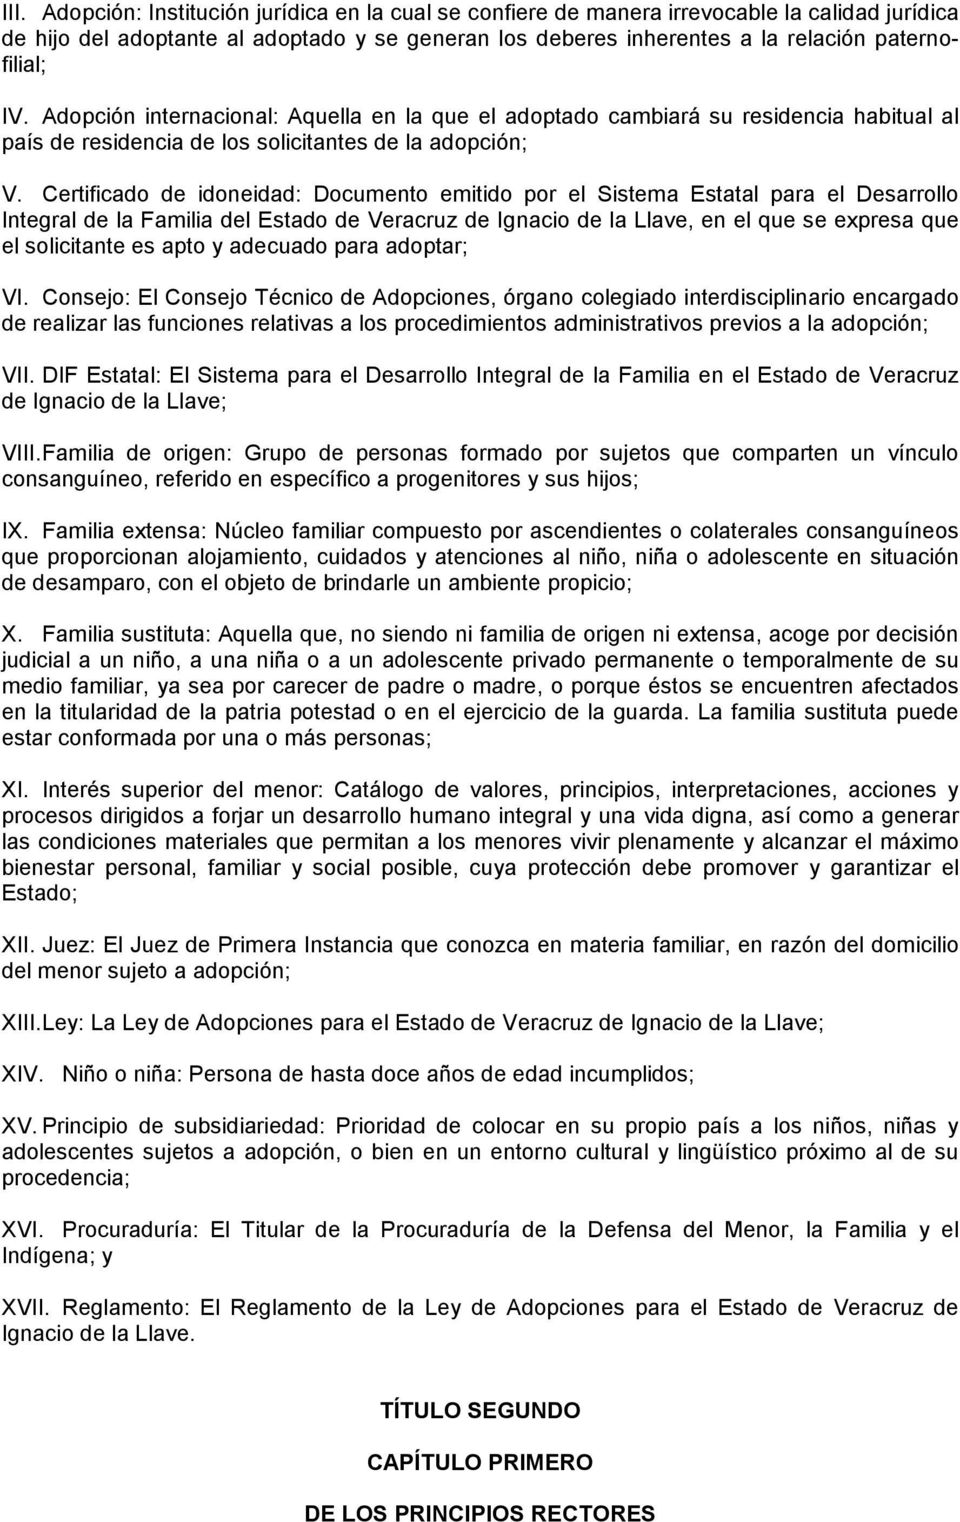 Certificado de idoneidad: Documento emitido por el Sistema Estatal para el Desarrollo Integral de la Familia del Estado de Veracruz de Ignacio de la Llave, en el que se expresa que el solicitante es